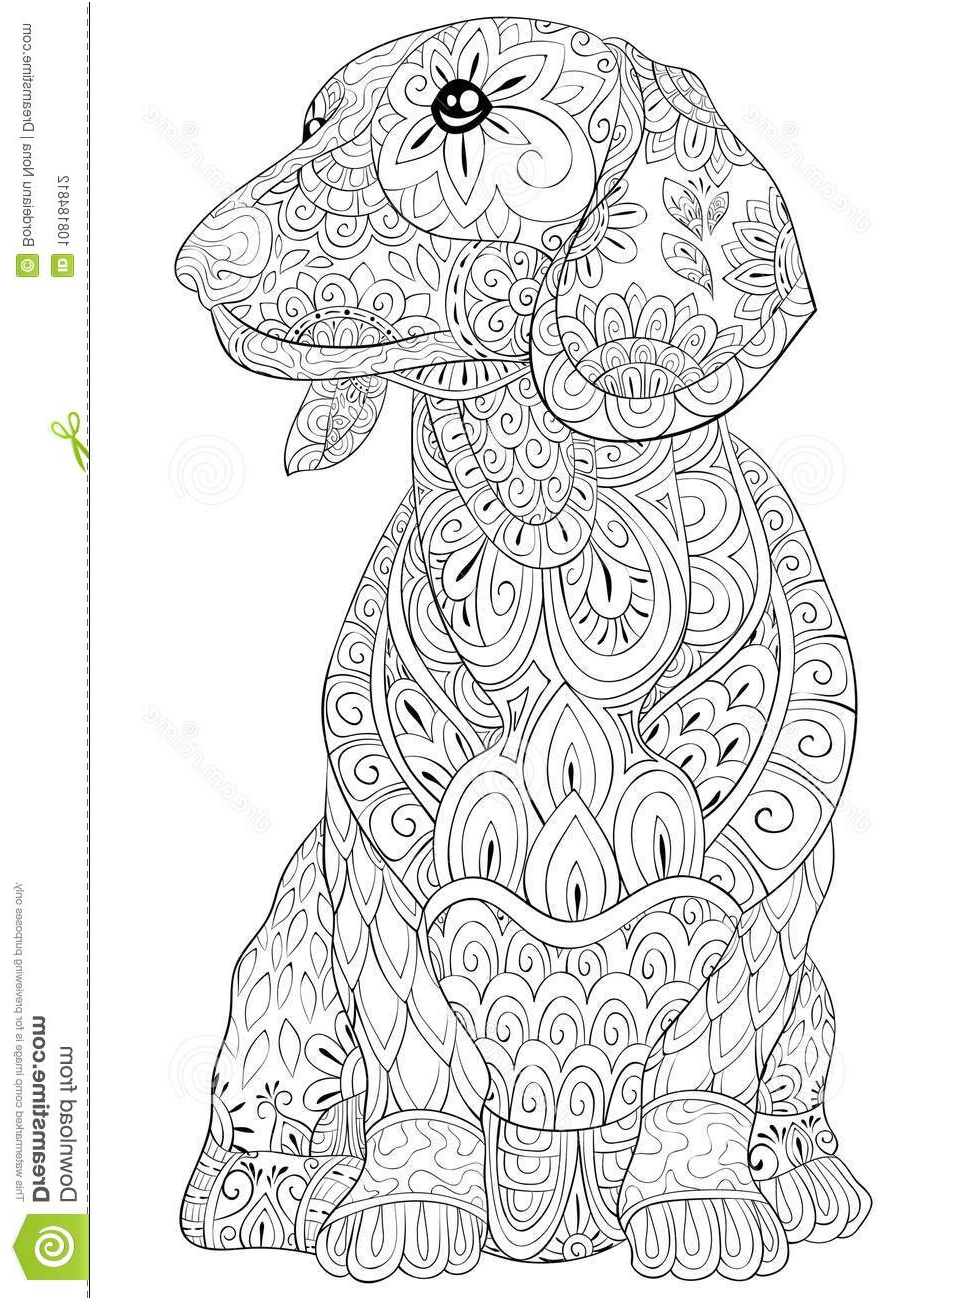 livre coloriage adulte paginent chien d isolement mignon détente illustration style art zen image